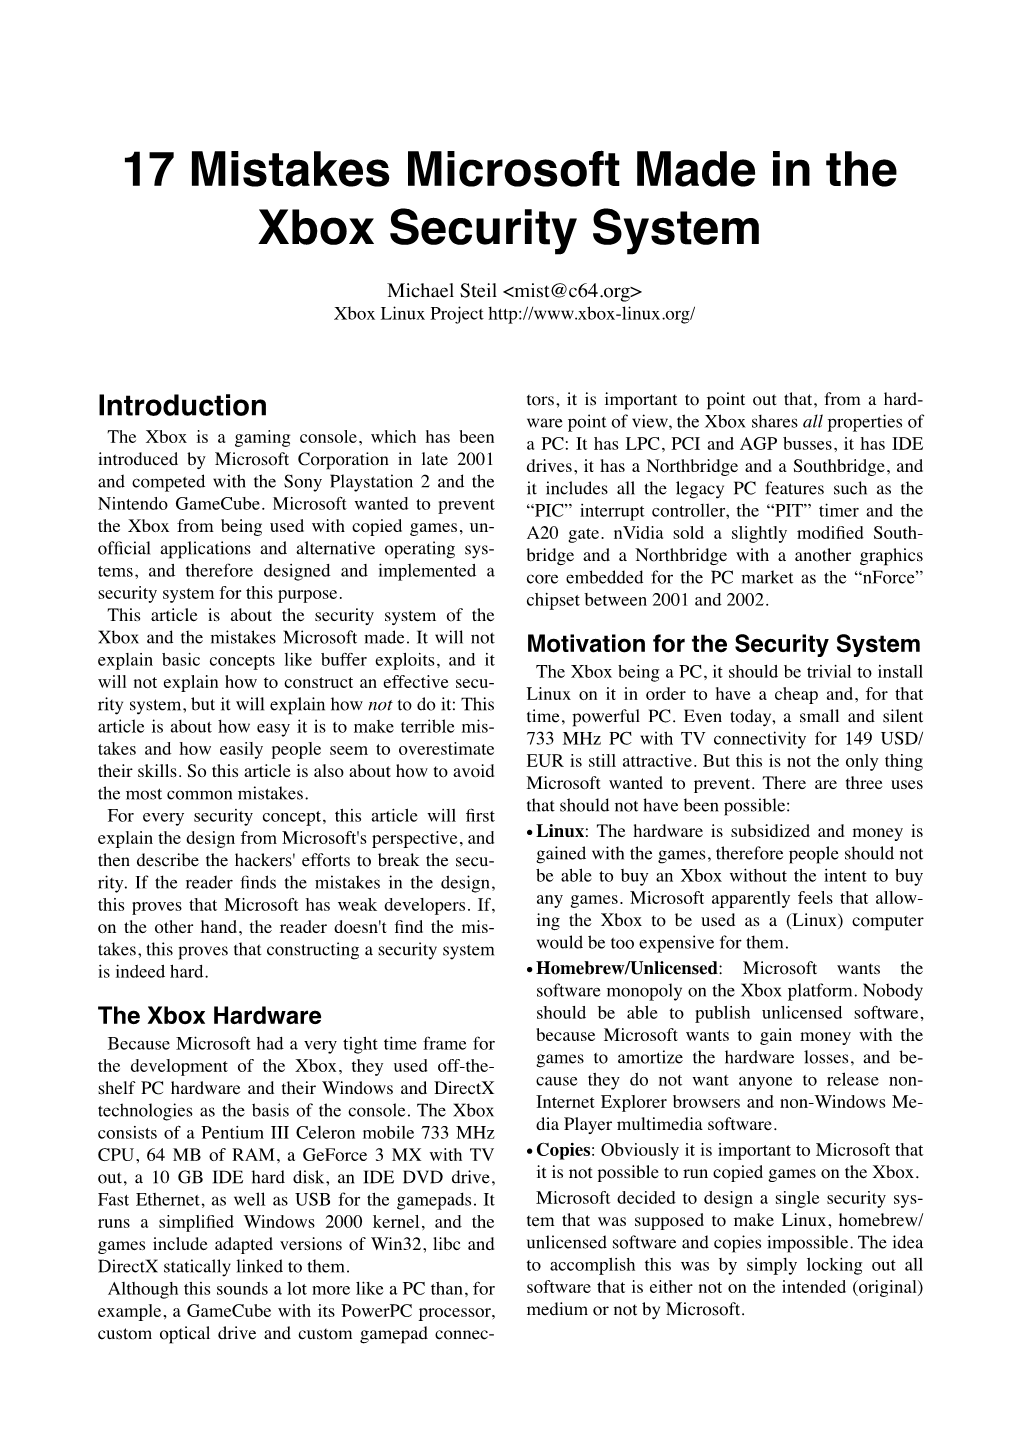 22C3 Xbox Security